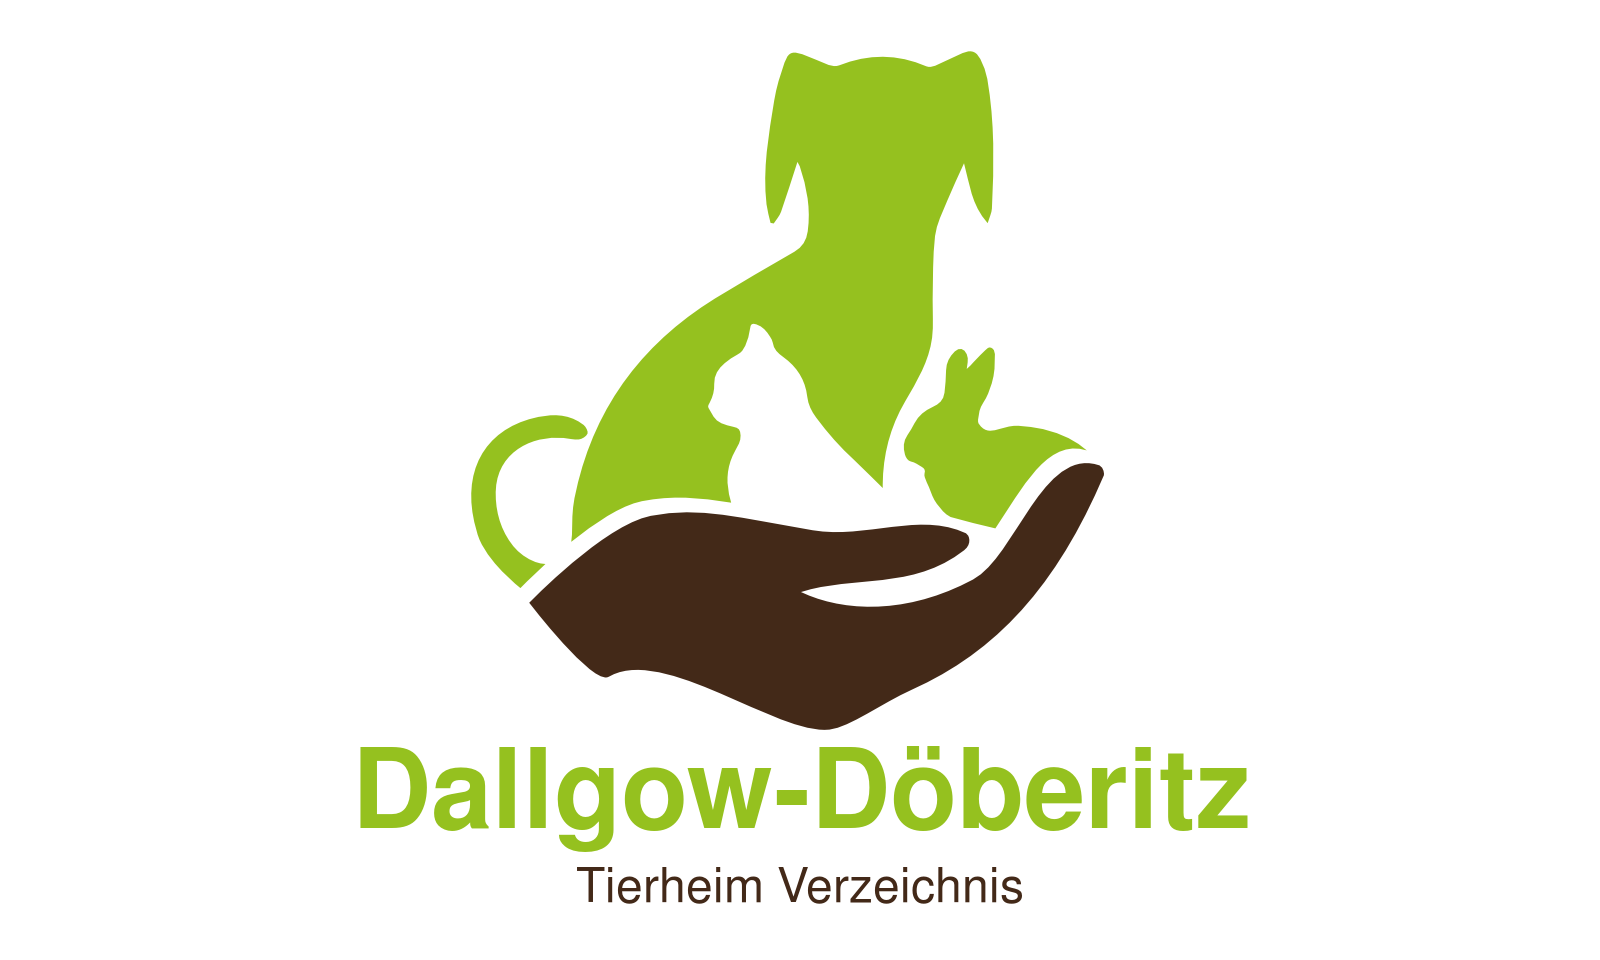 Tierheim Dallgow-Döberitz